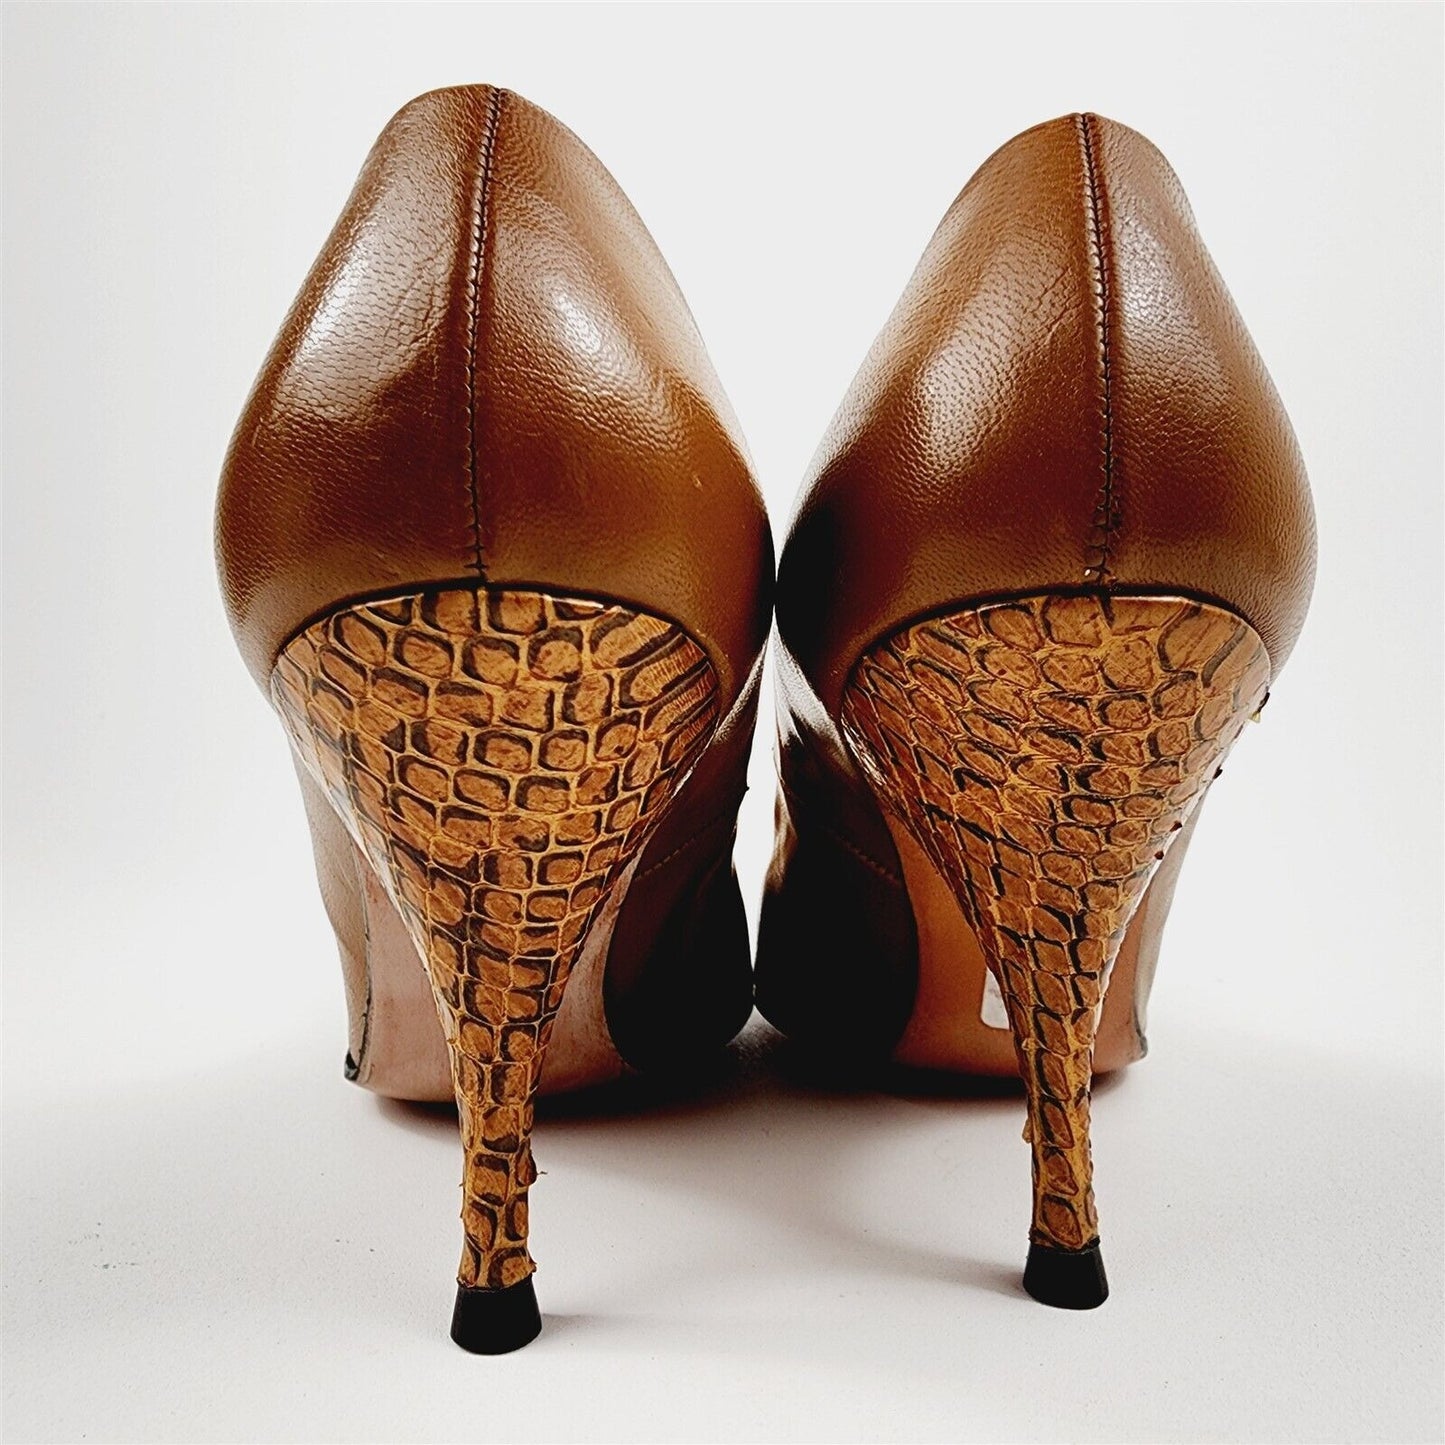 Vtg 1950s/60s So Unbelievably Johansen Brown Snakeskin Leather Heel Womens 4 B